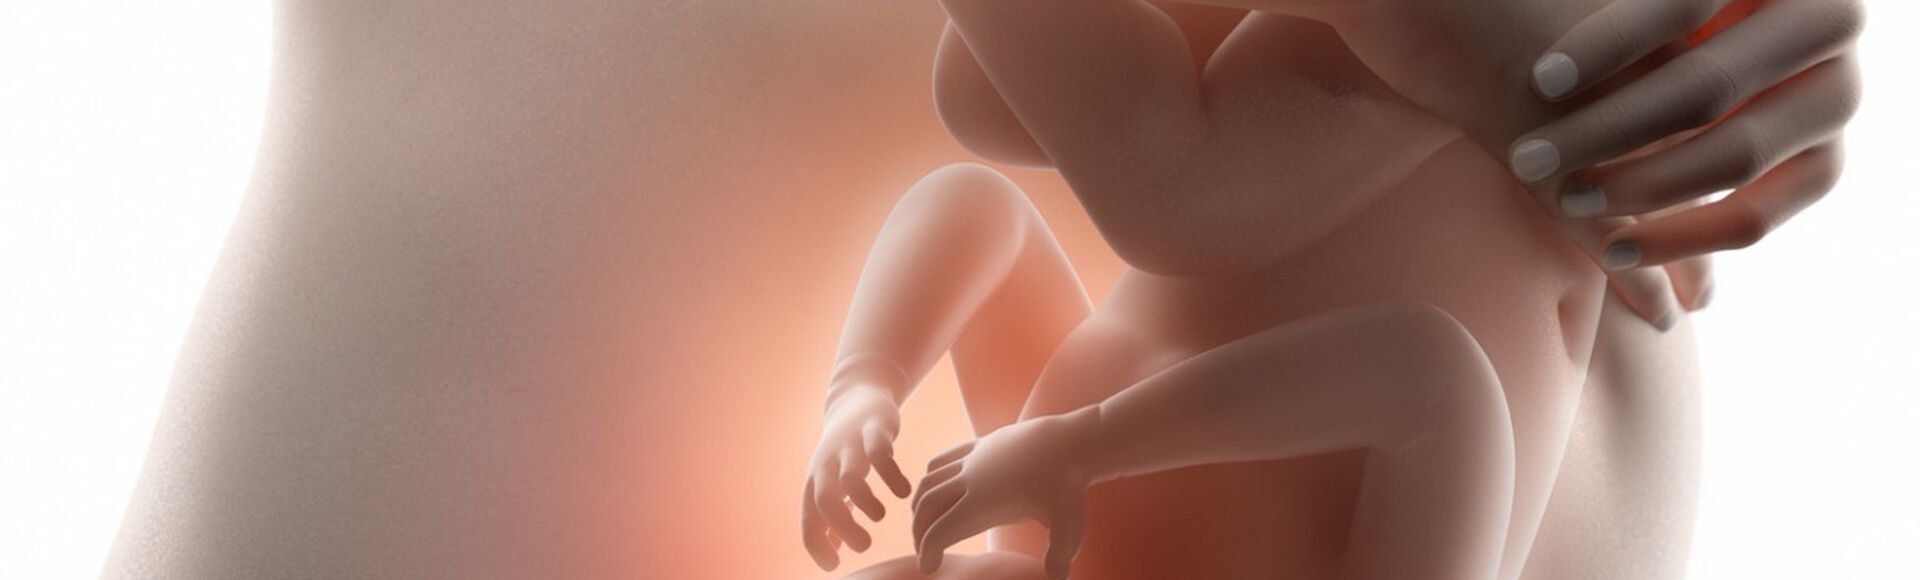 Ilustração de feto dentro da barriga da mãe